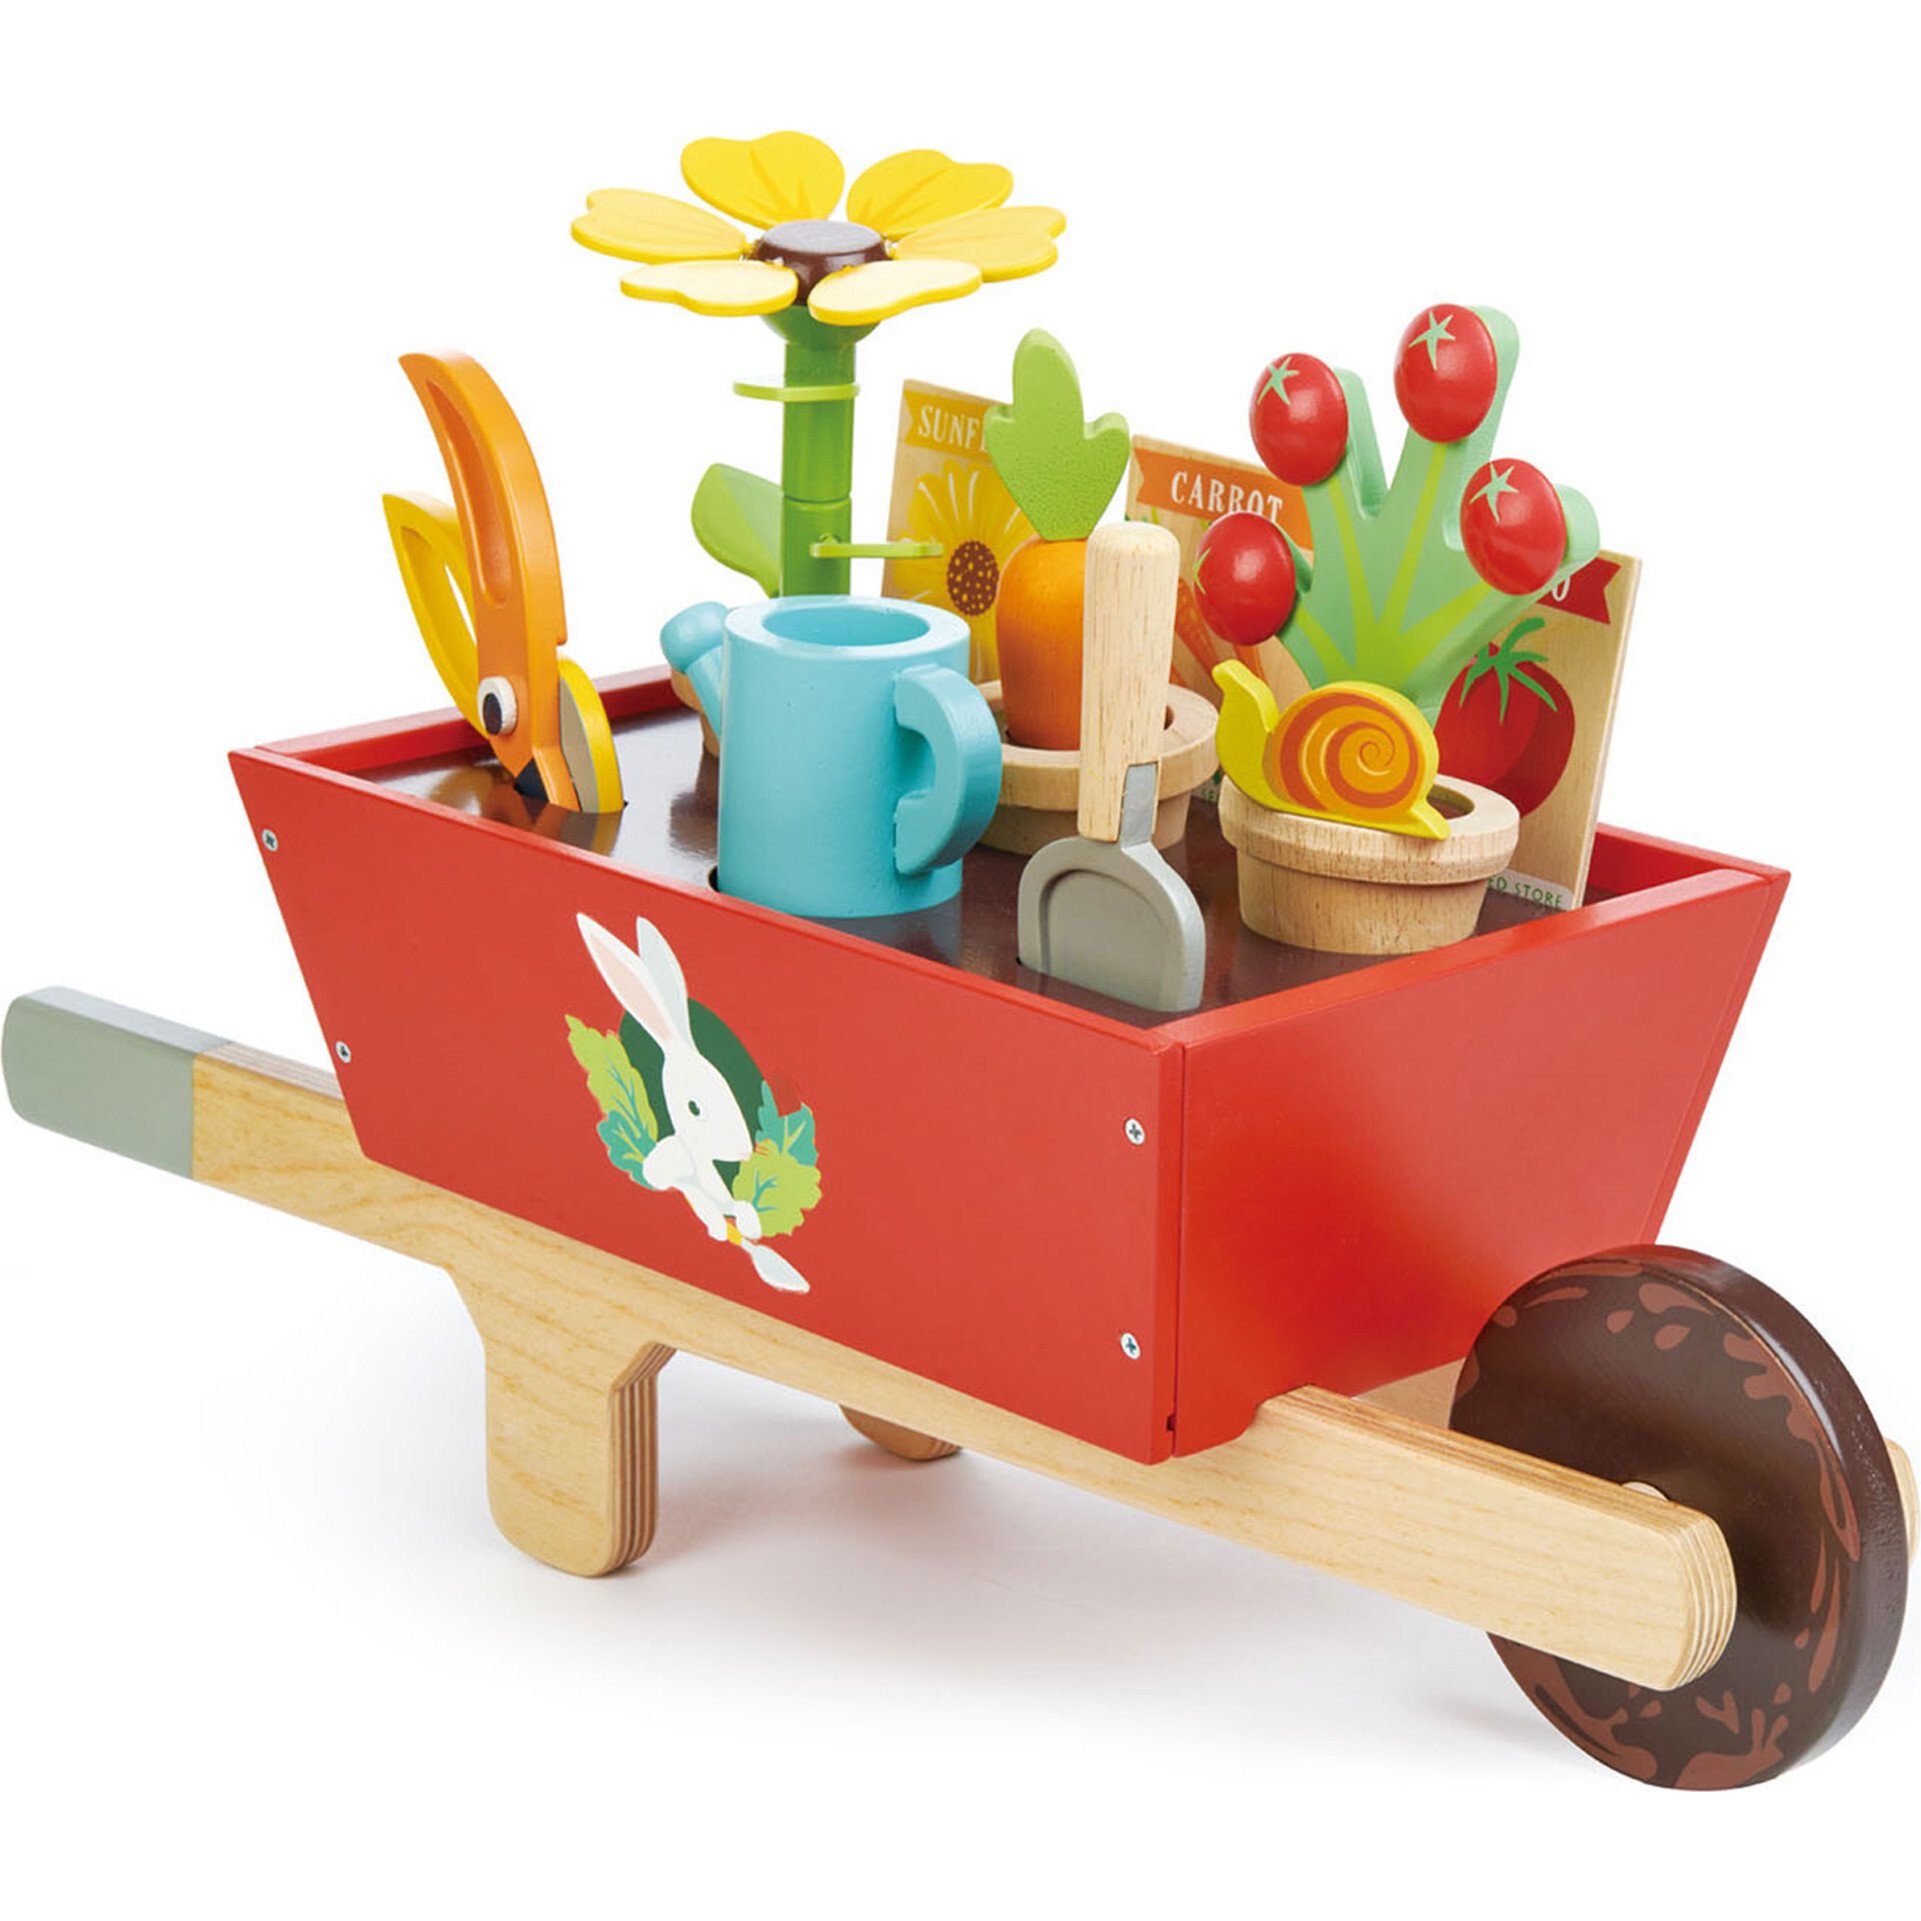 Garden wheelbarrow toy